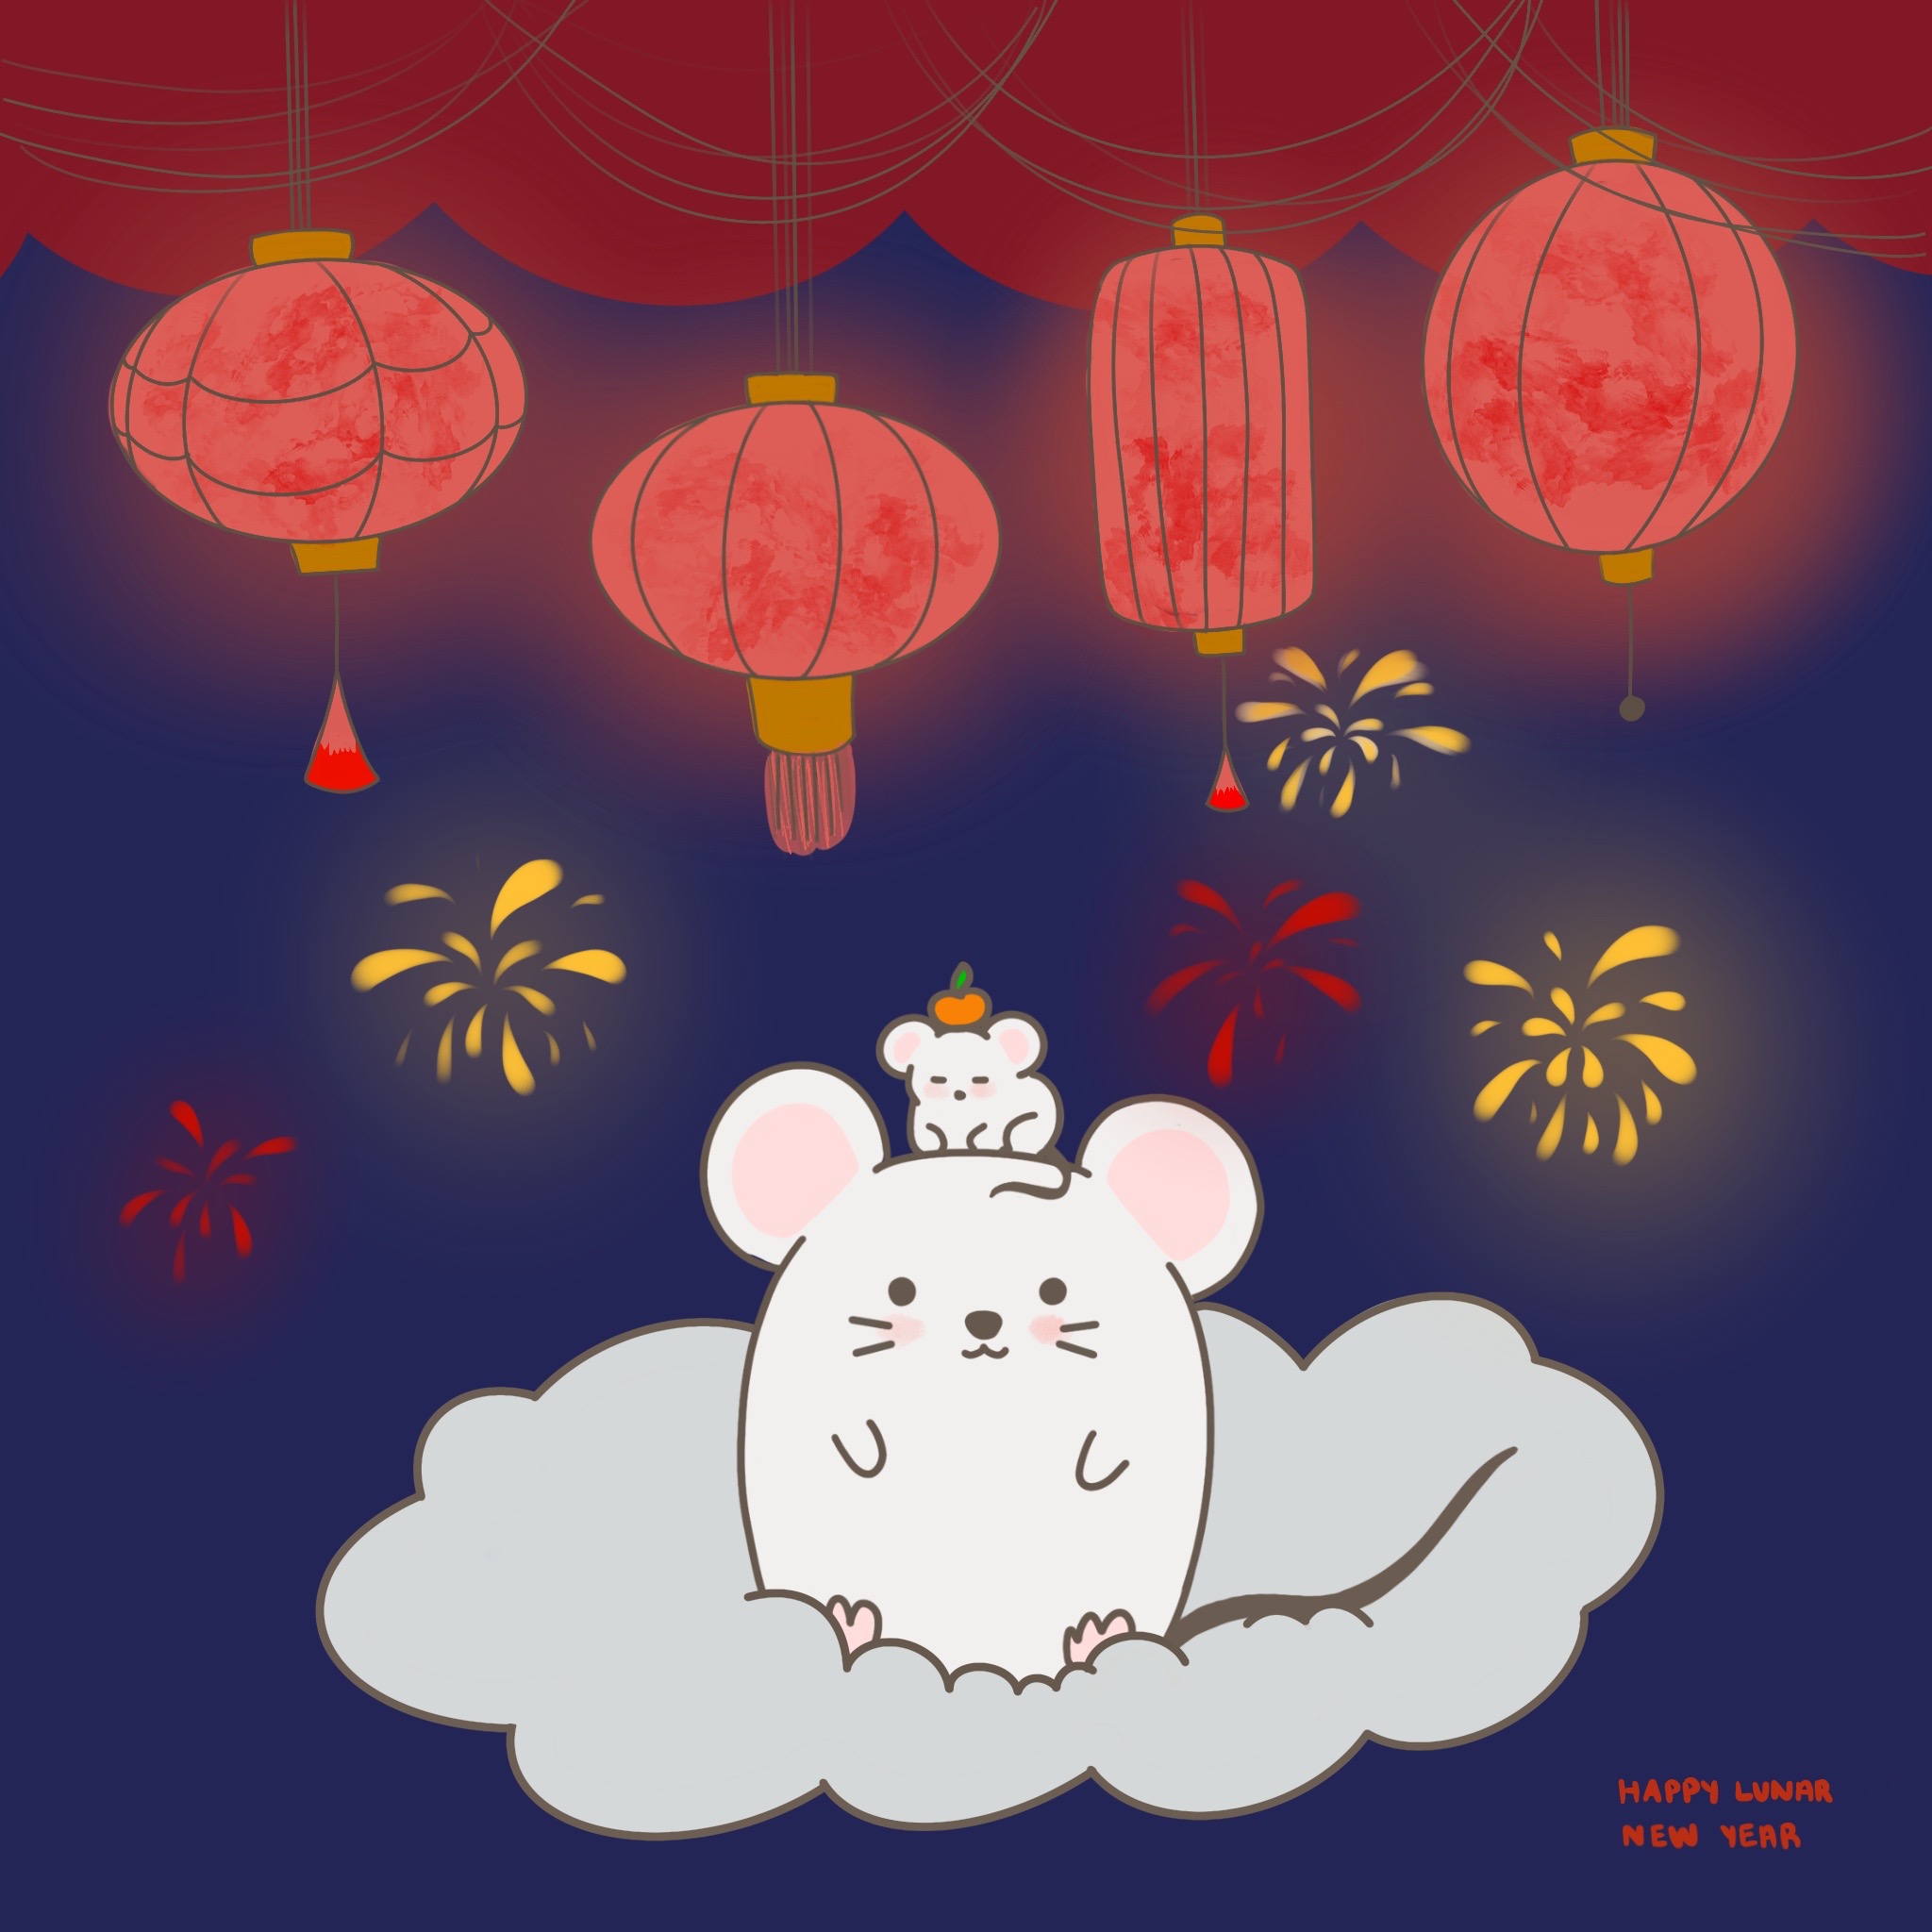 Happy Lunar New Year night